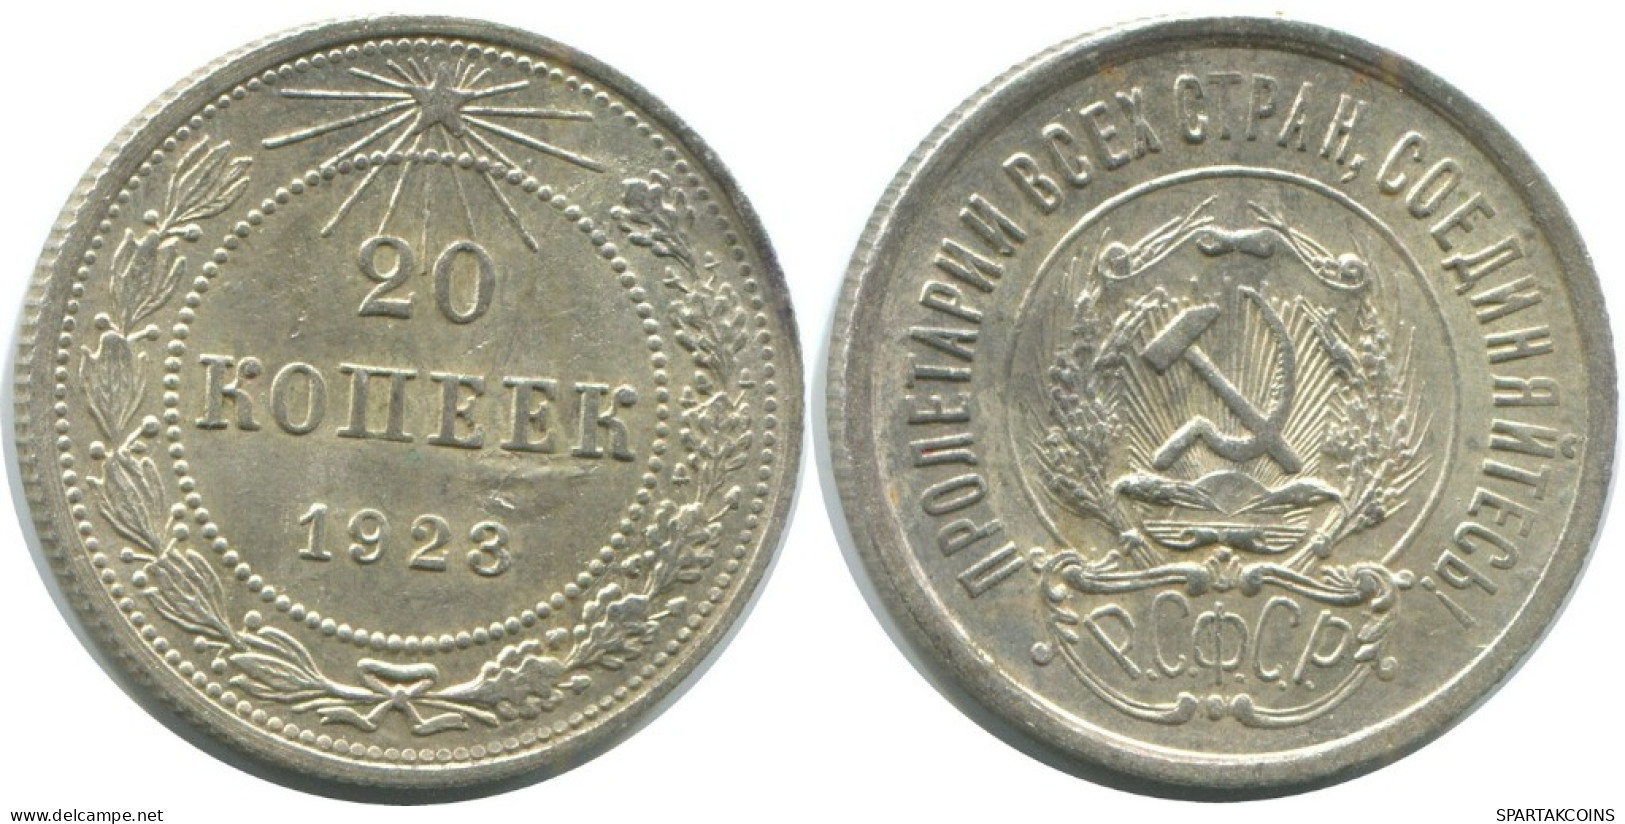 20 KOPEKS 1923 RUSSIA RSFSR SILVER Coin HIGH GRADE #AF586.4.U.A - Russland